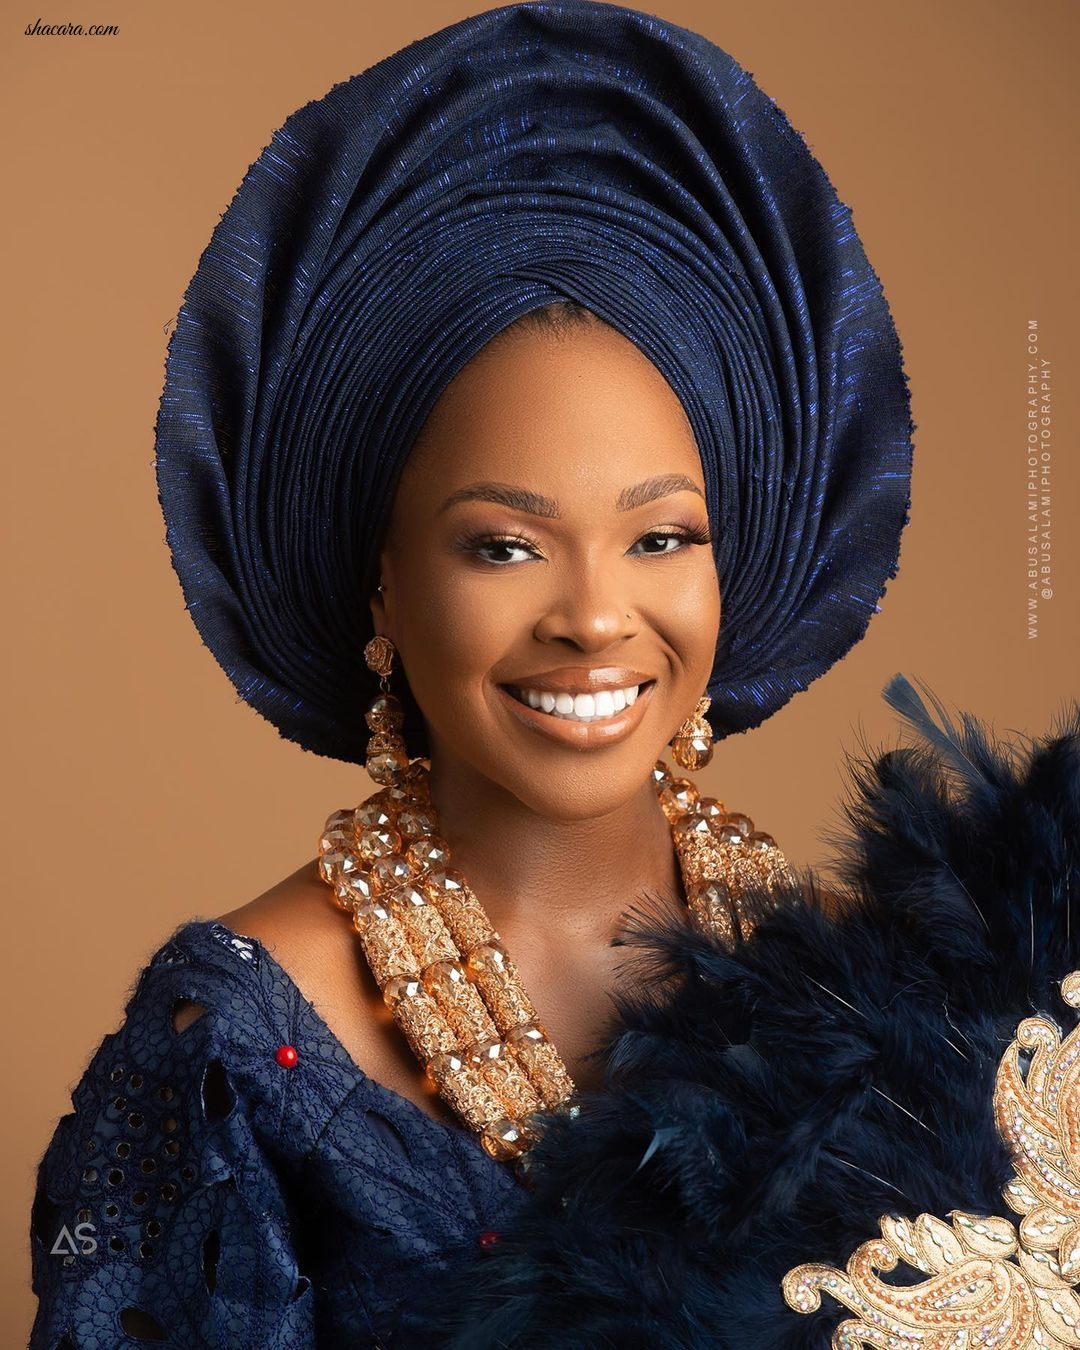 BBNaija’s Vee Serves Yoruba Bridal Beauty Inspo In New Photos